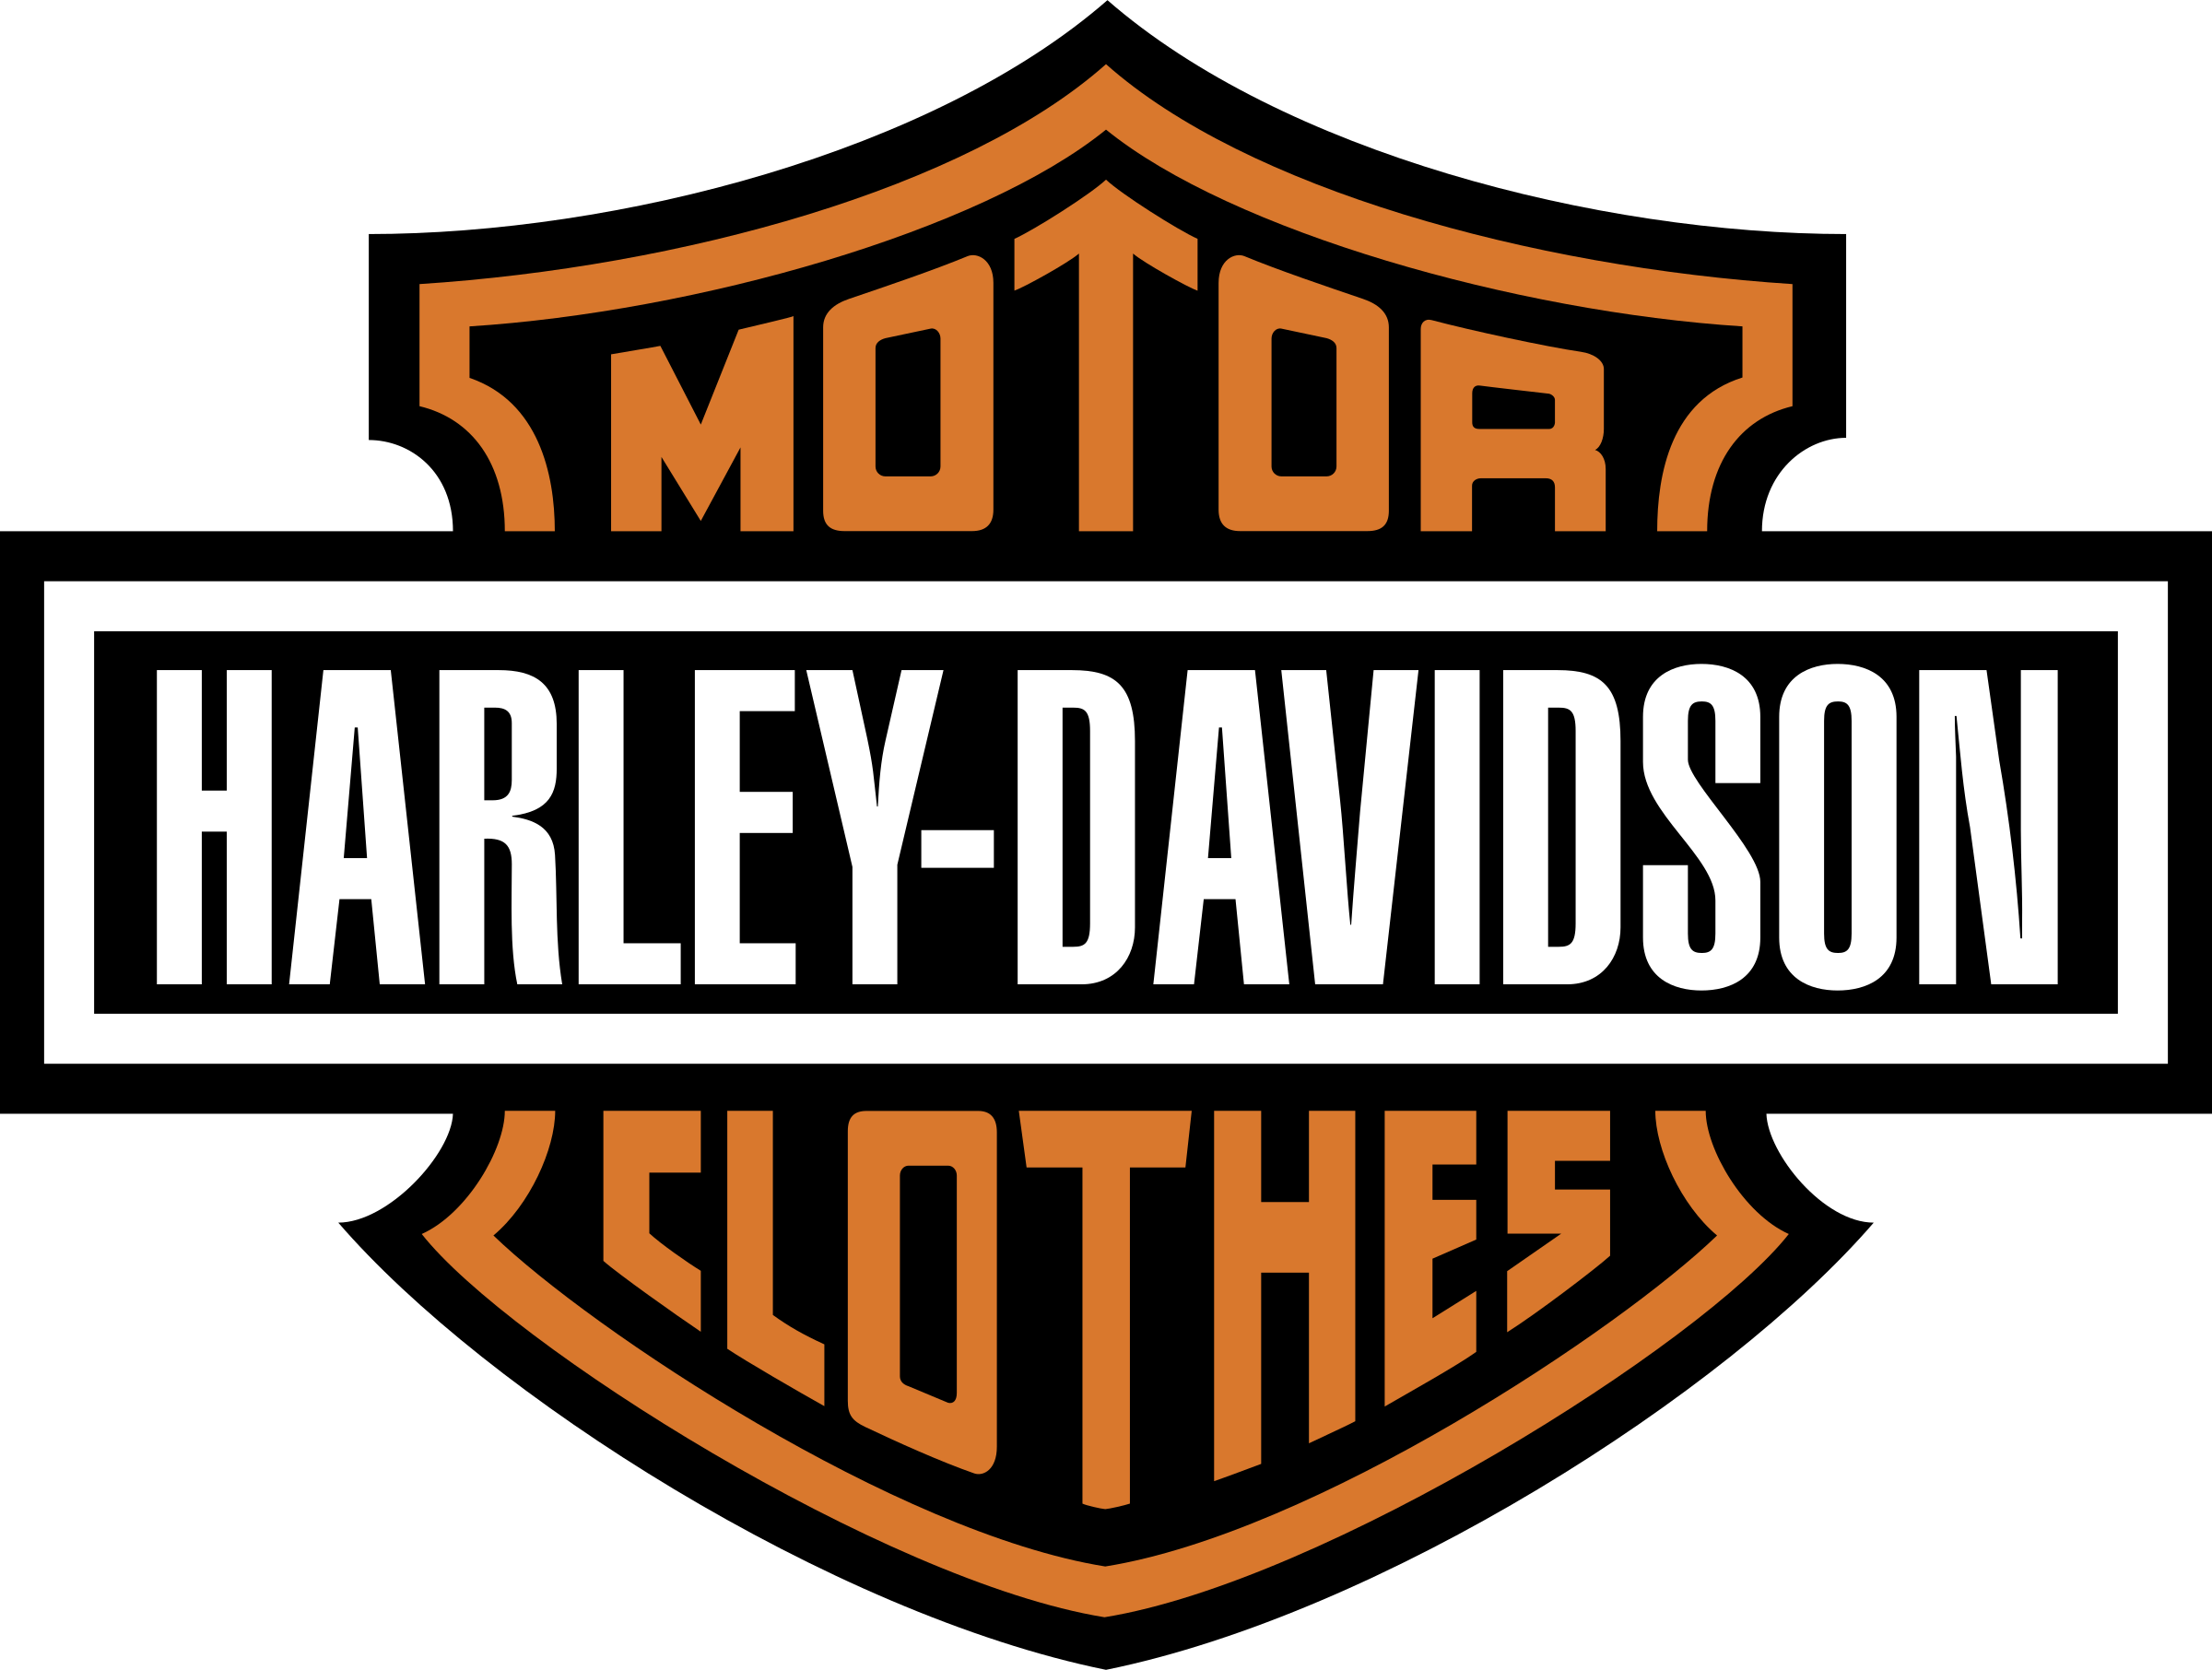 Harley Davidson Logo PNG Transparent Images - PNG All